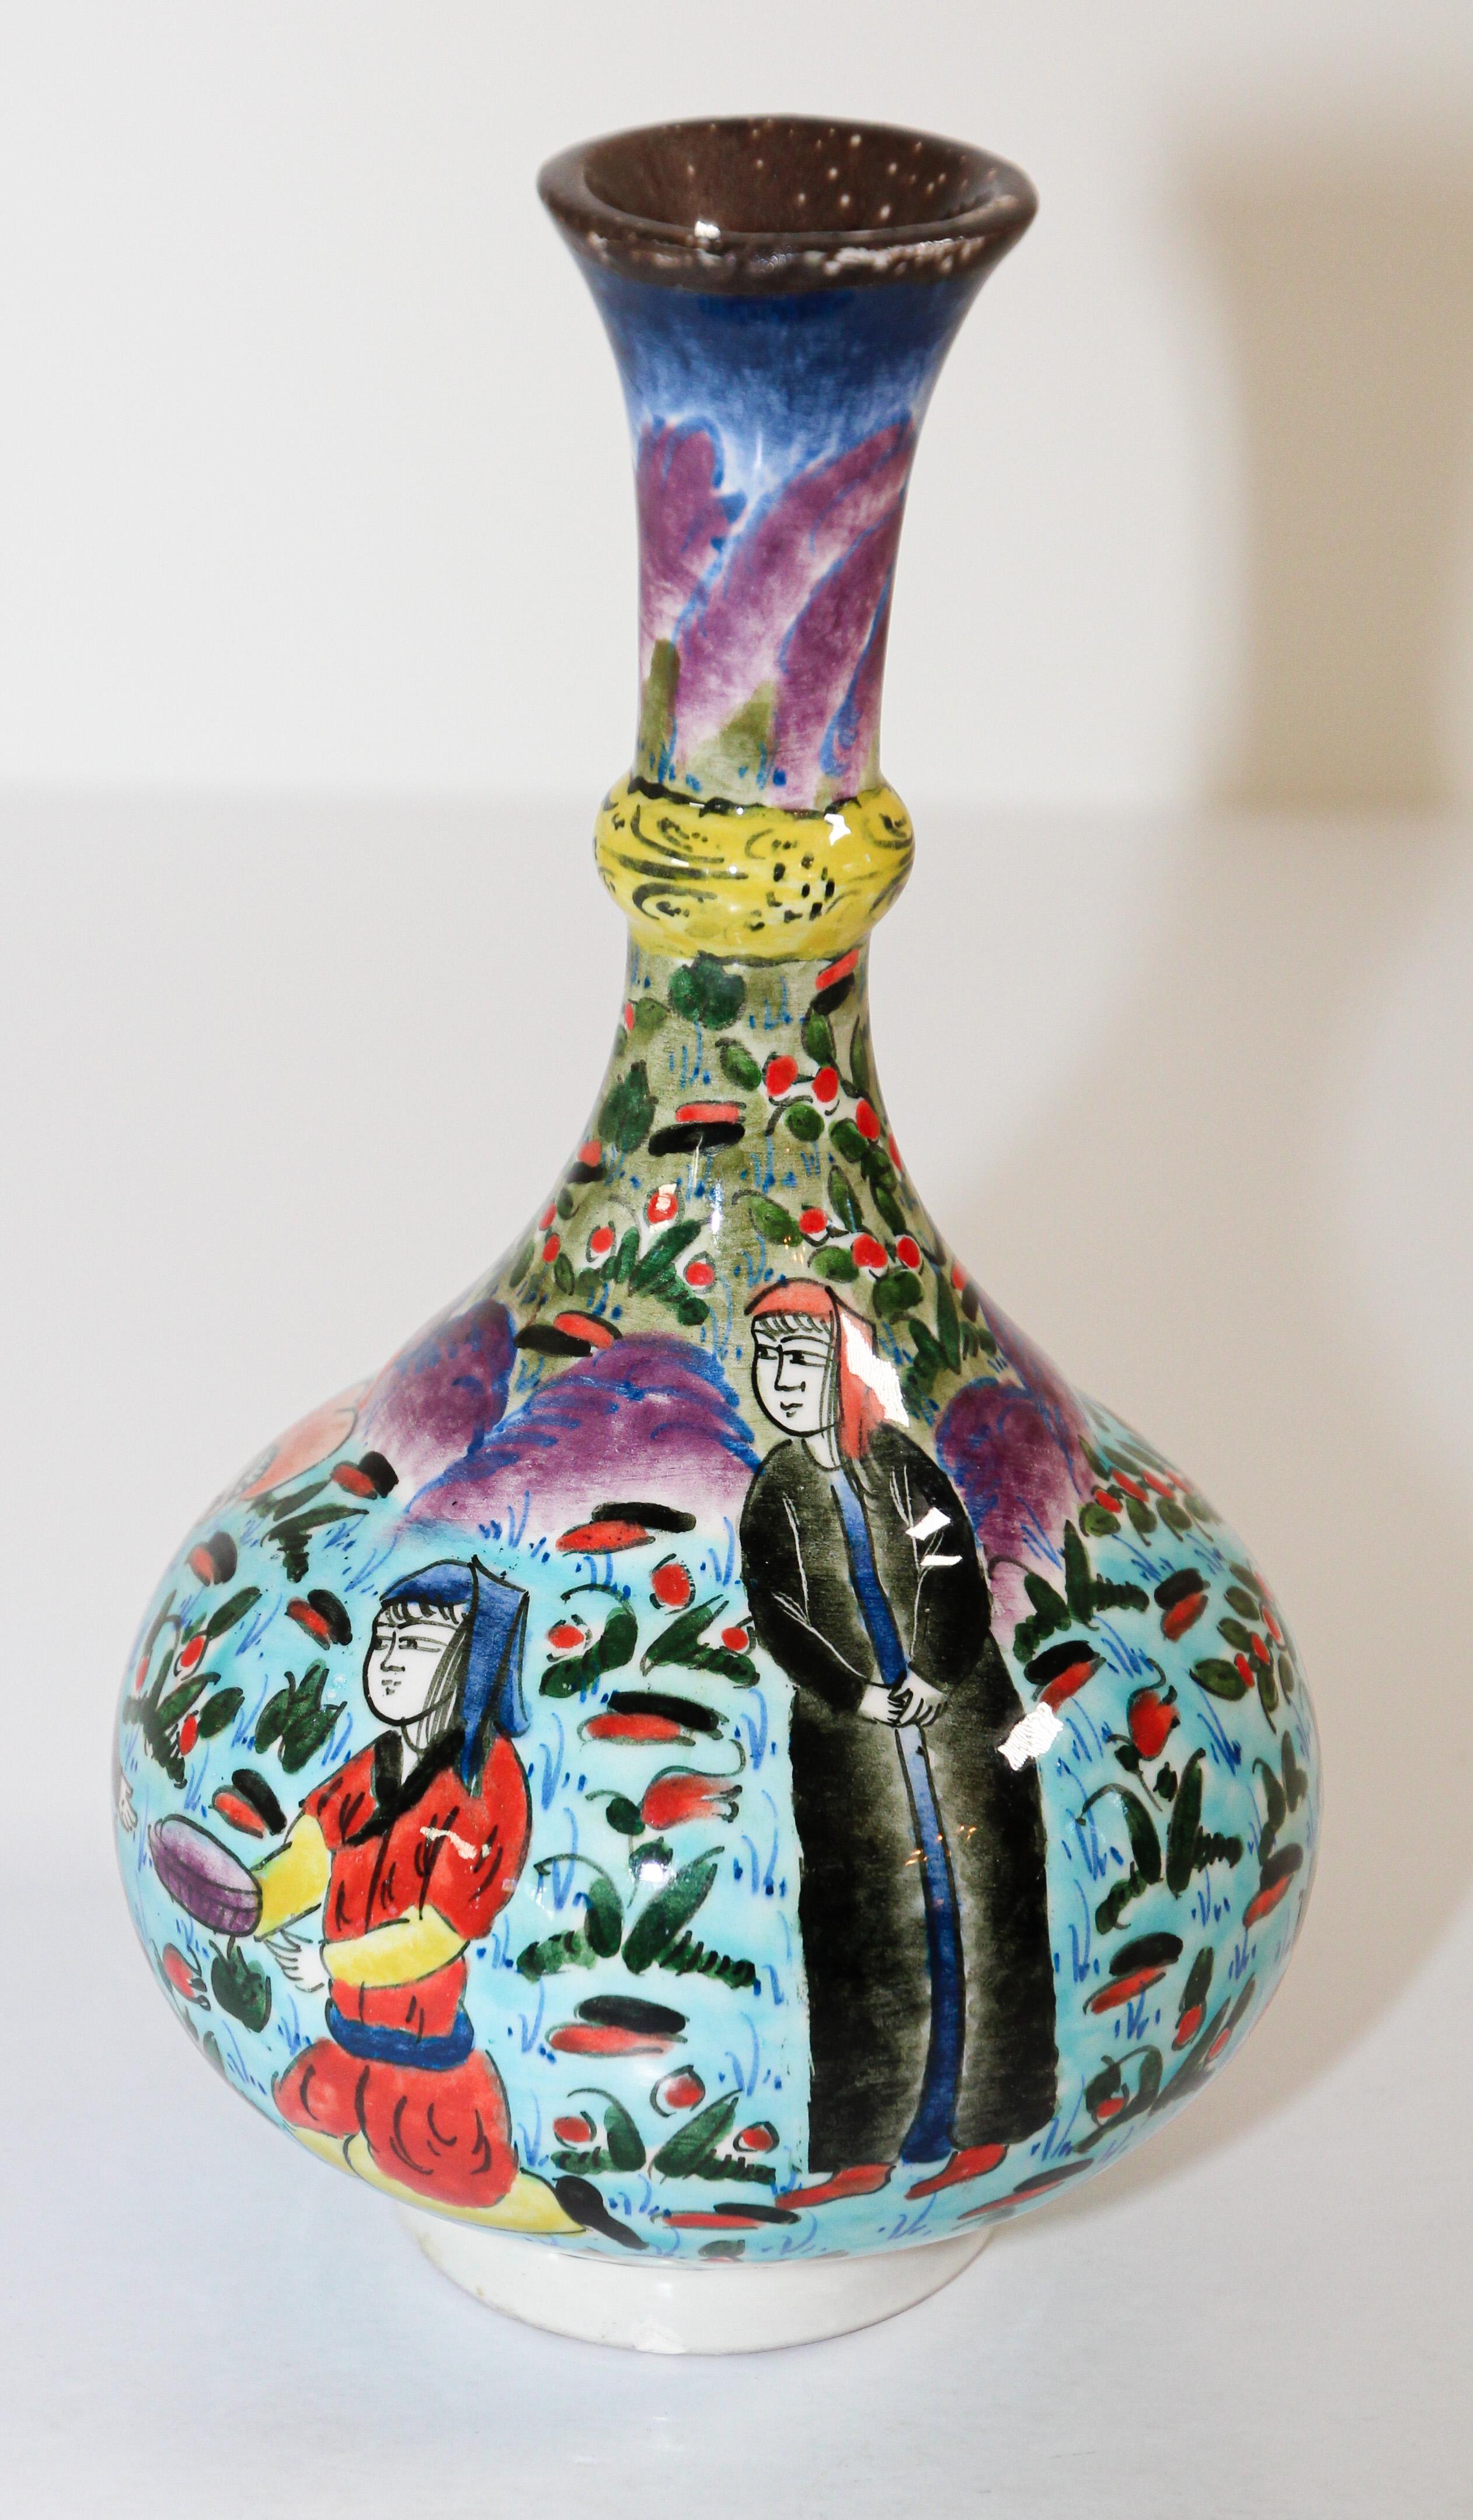 Eine kleine, polychrome, handbemalte und handgefertigte, glasierte Keramikvase im Kütahya-Stil mit einer osmanischen Szene.
Dies ist eine aufwendig handbemalte Vase, die in Marmara, Türkei, hergestellt wurde:
Kütahya ist berühmt für seine glasierten